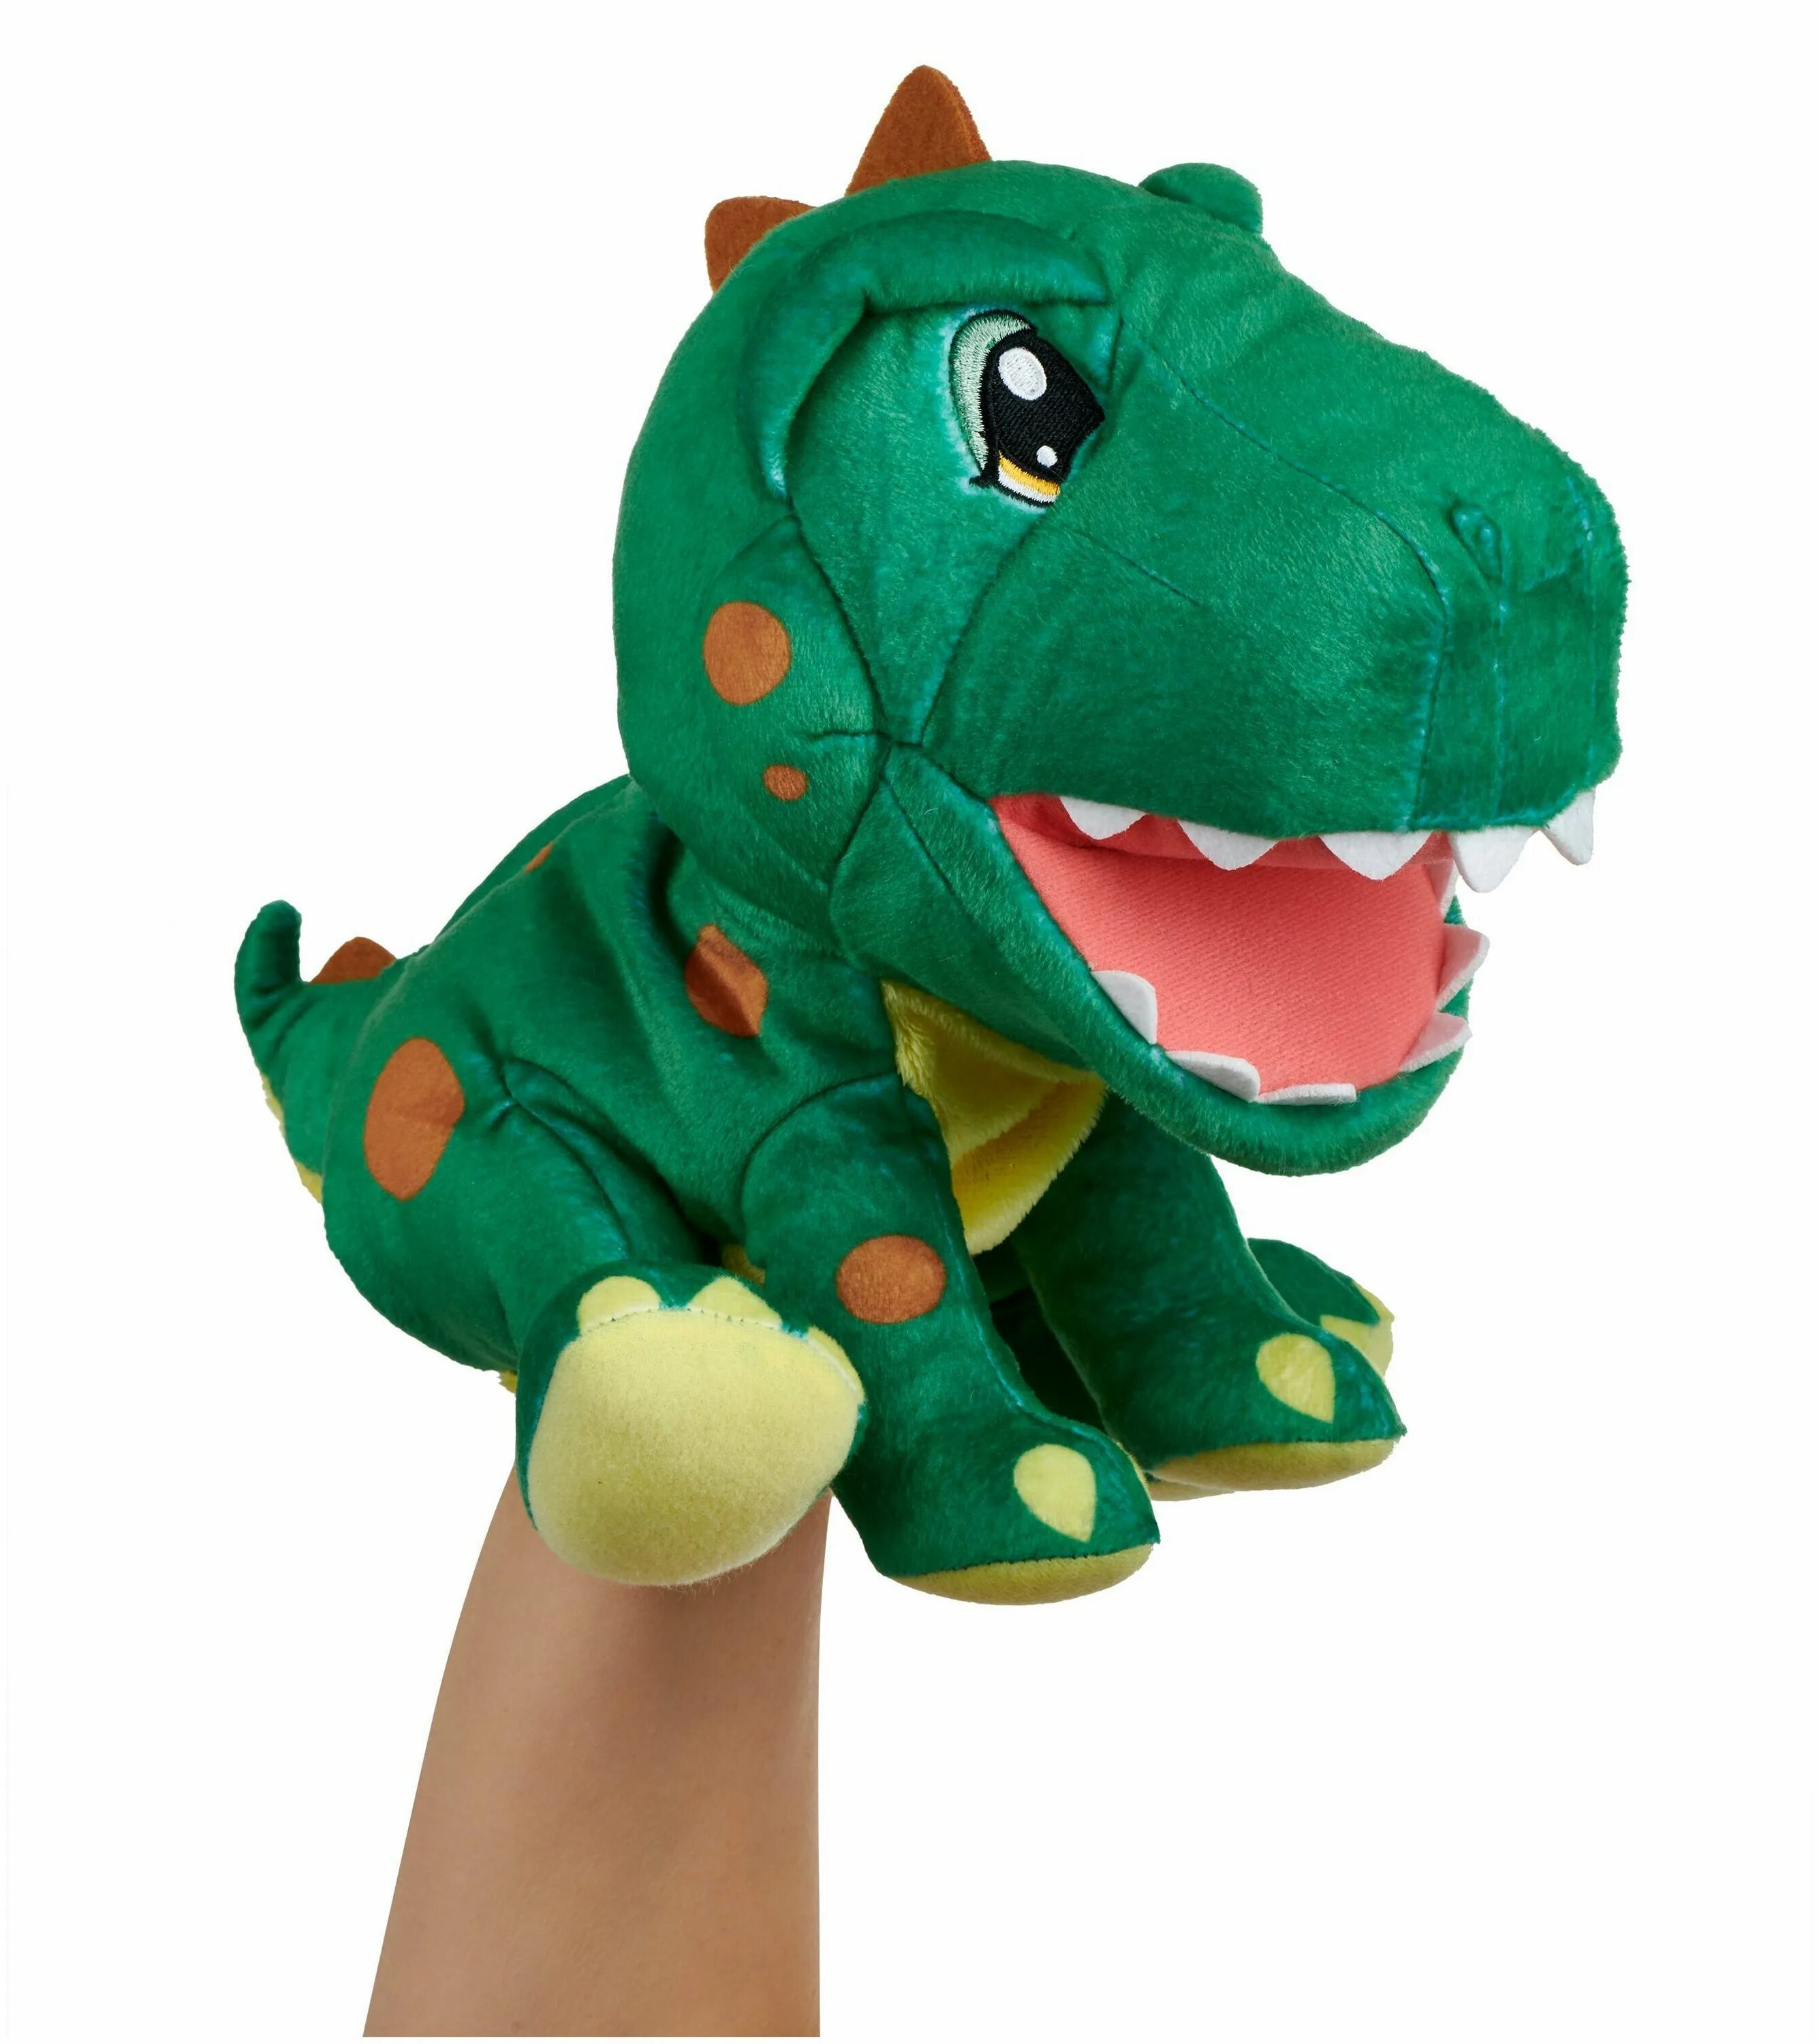 Динозавр на руку. Интерактивная игрушка Дино мягкий. WOWWEE динозавр. Мягкая интерактивная игрушка WOWWEE. Динозавр на руку игрушка.